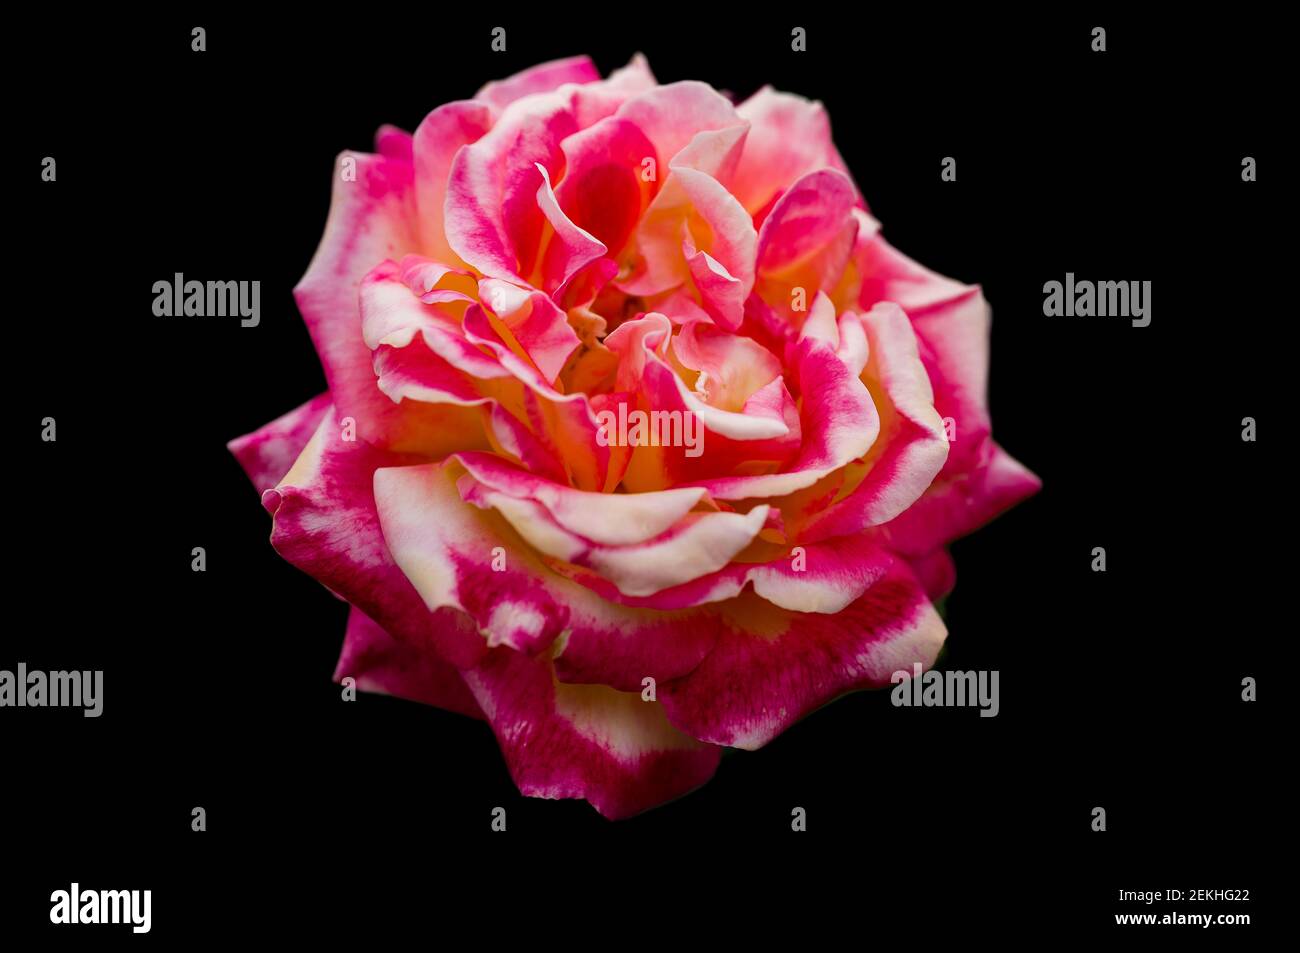 Tête de fleur rose rose et jaune sur fond noir Banque D'Images